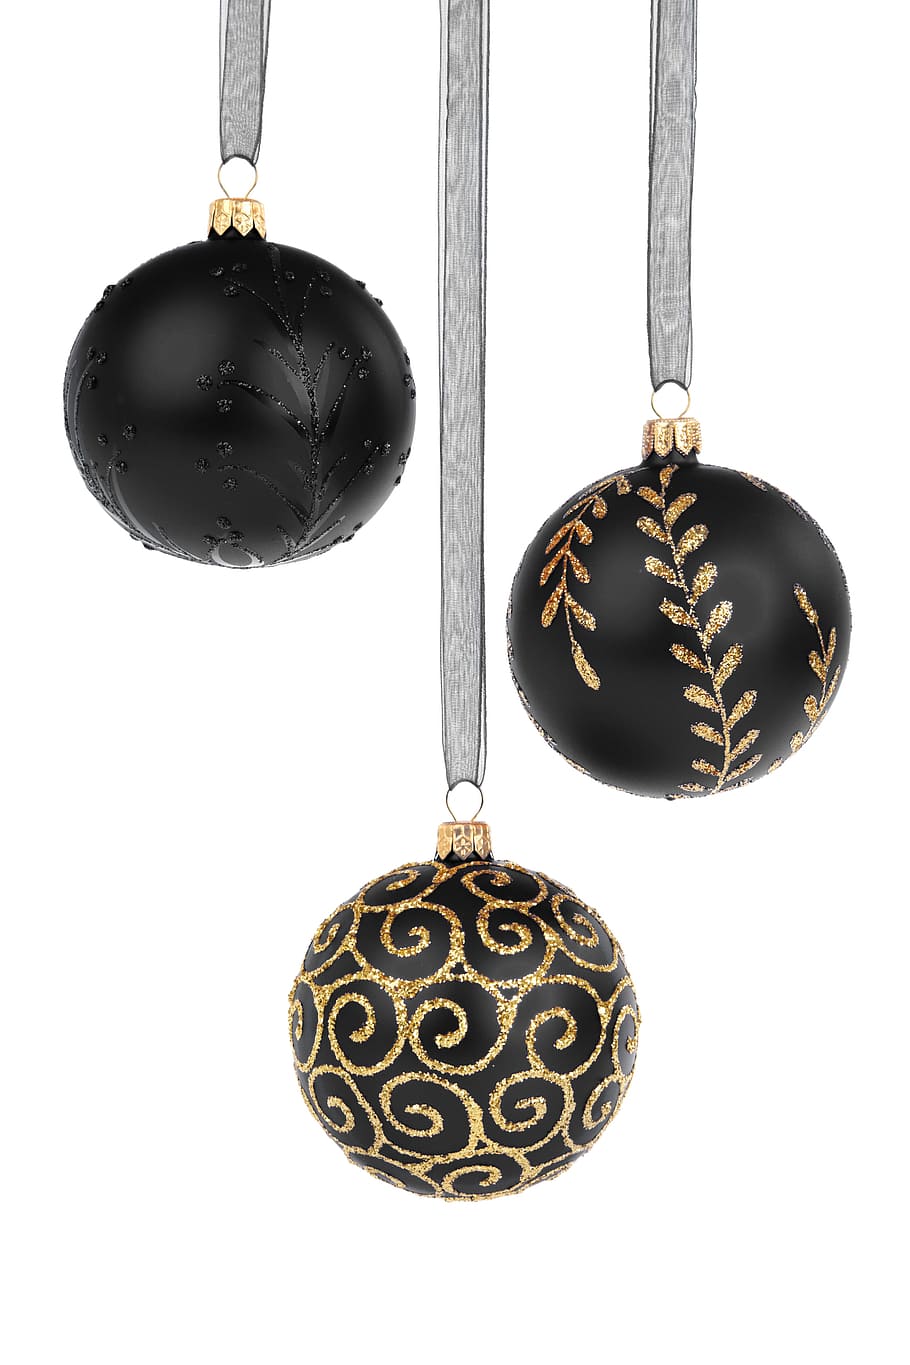 tres bolas de oro y negro, Bola, Bolas, Adorno navideño, Celebración, Navidad, Diciembre, Decoración, Decorativo, Vidrio